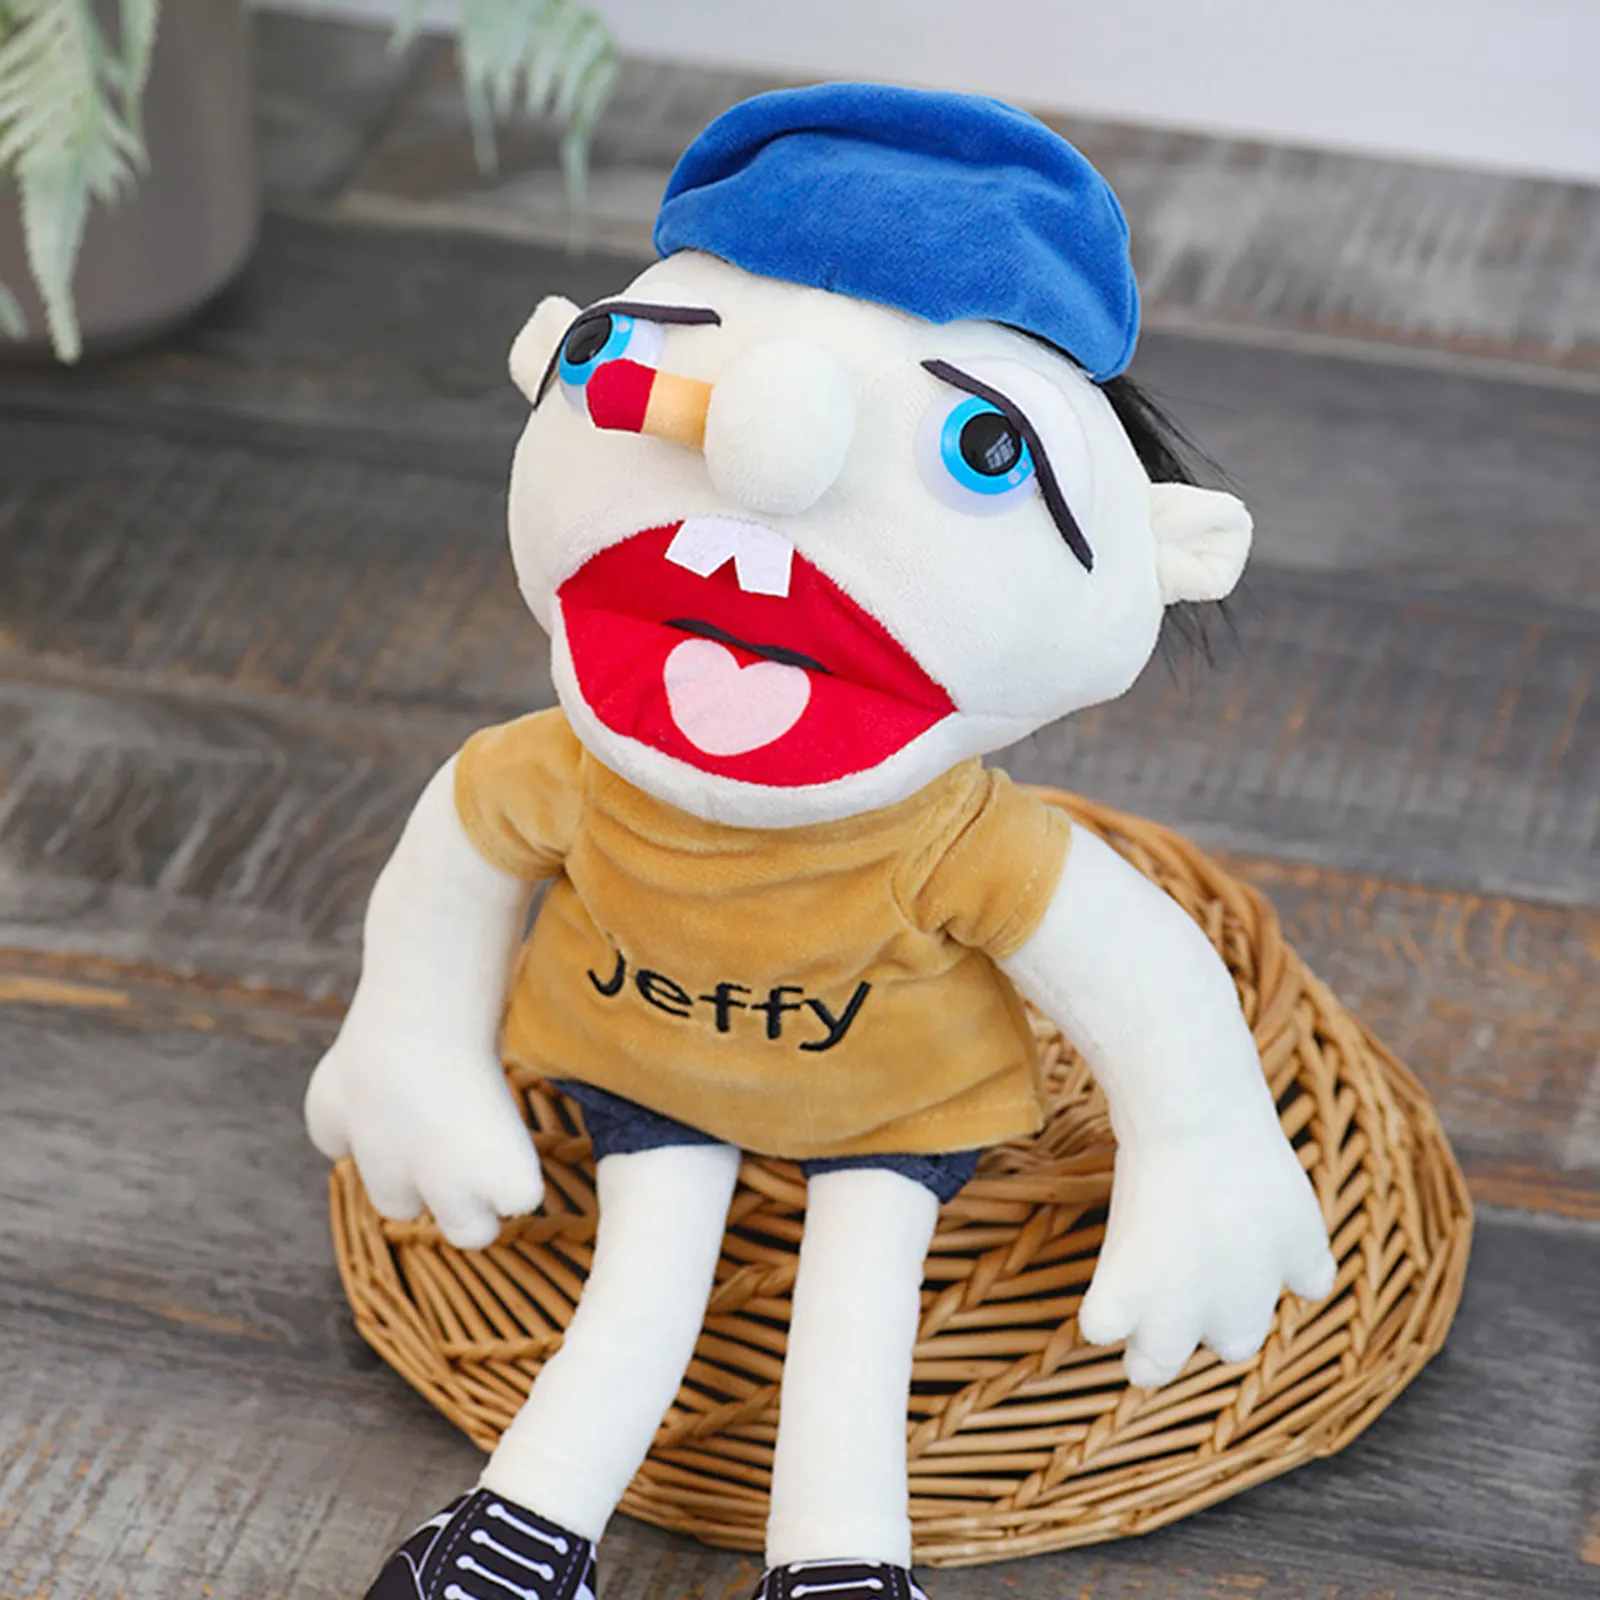 Jeffy Feebee Marionnette Jouet - Poupée en Peluche Douce en Peluche